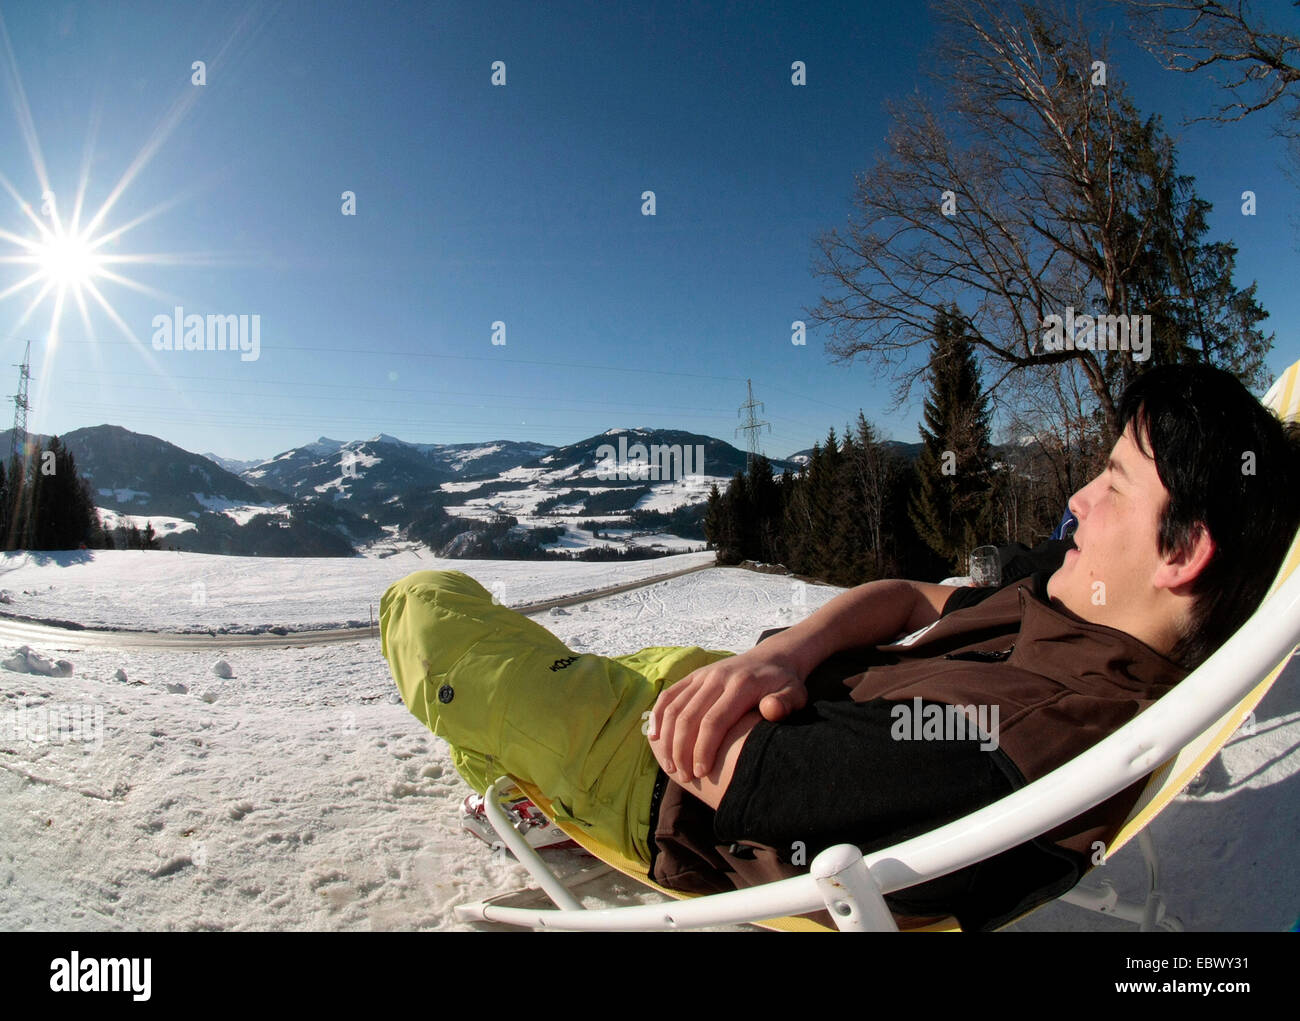 L'uomo rilassante nella neve su una sedia di canvas, Austria, Tirolo, Hopfgarten Foto Stock